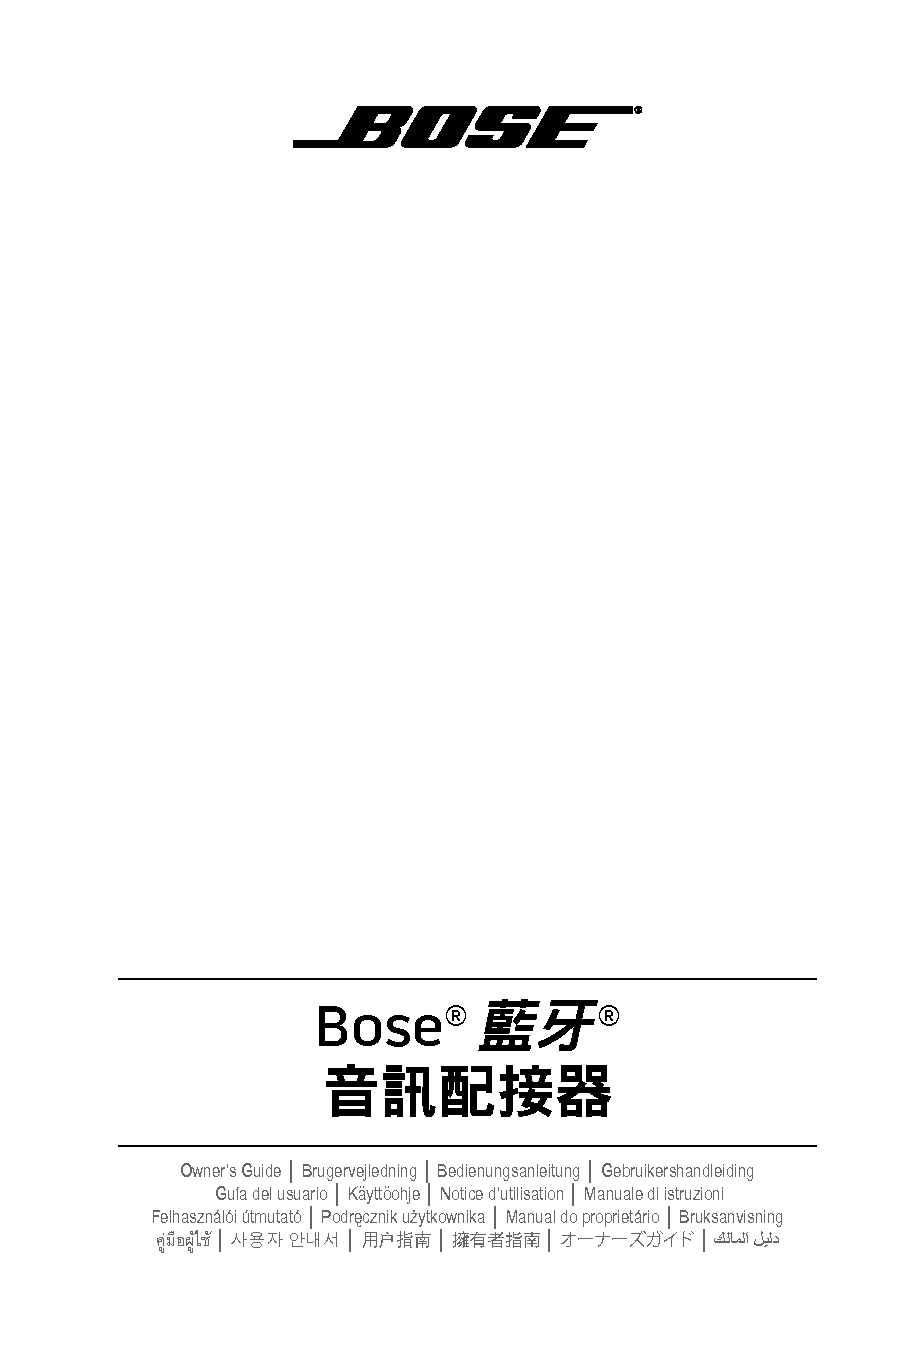 博士 Bose BLUETOOTH AUDIO ADAPTER 繁体 用户指南 封面